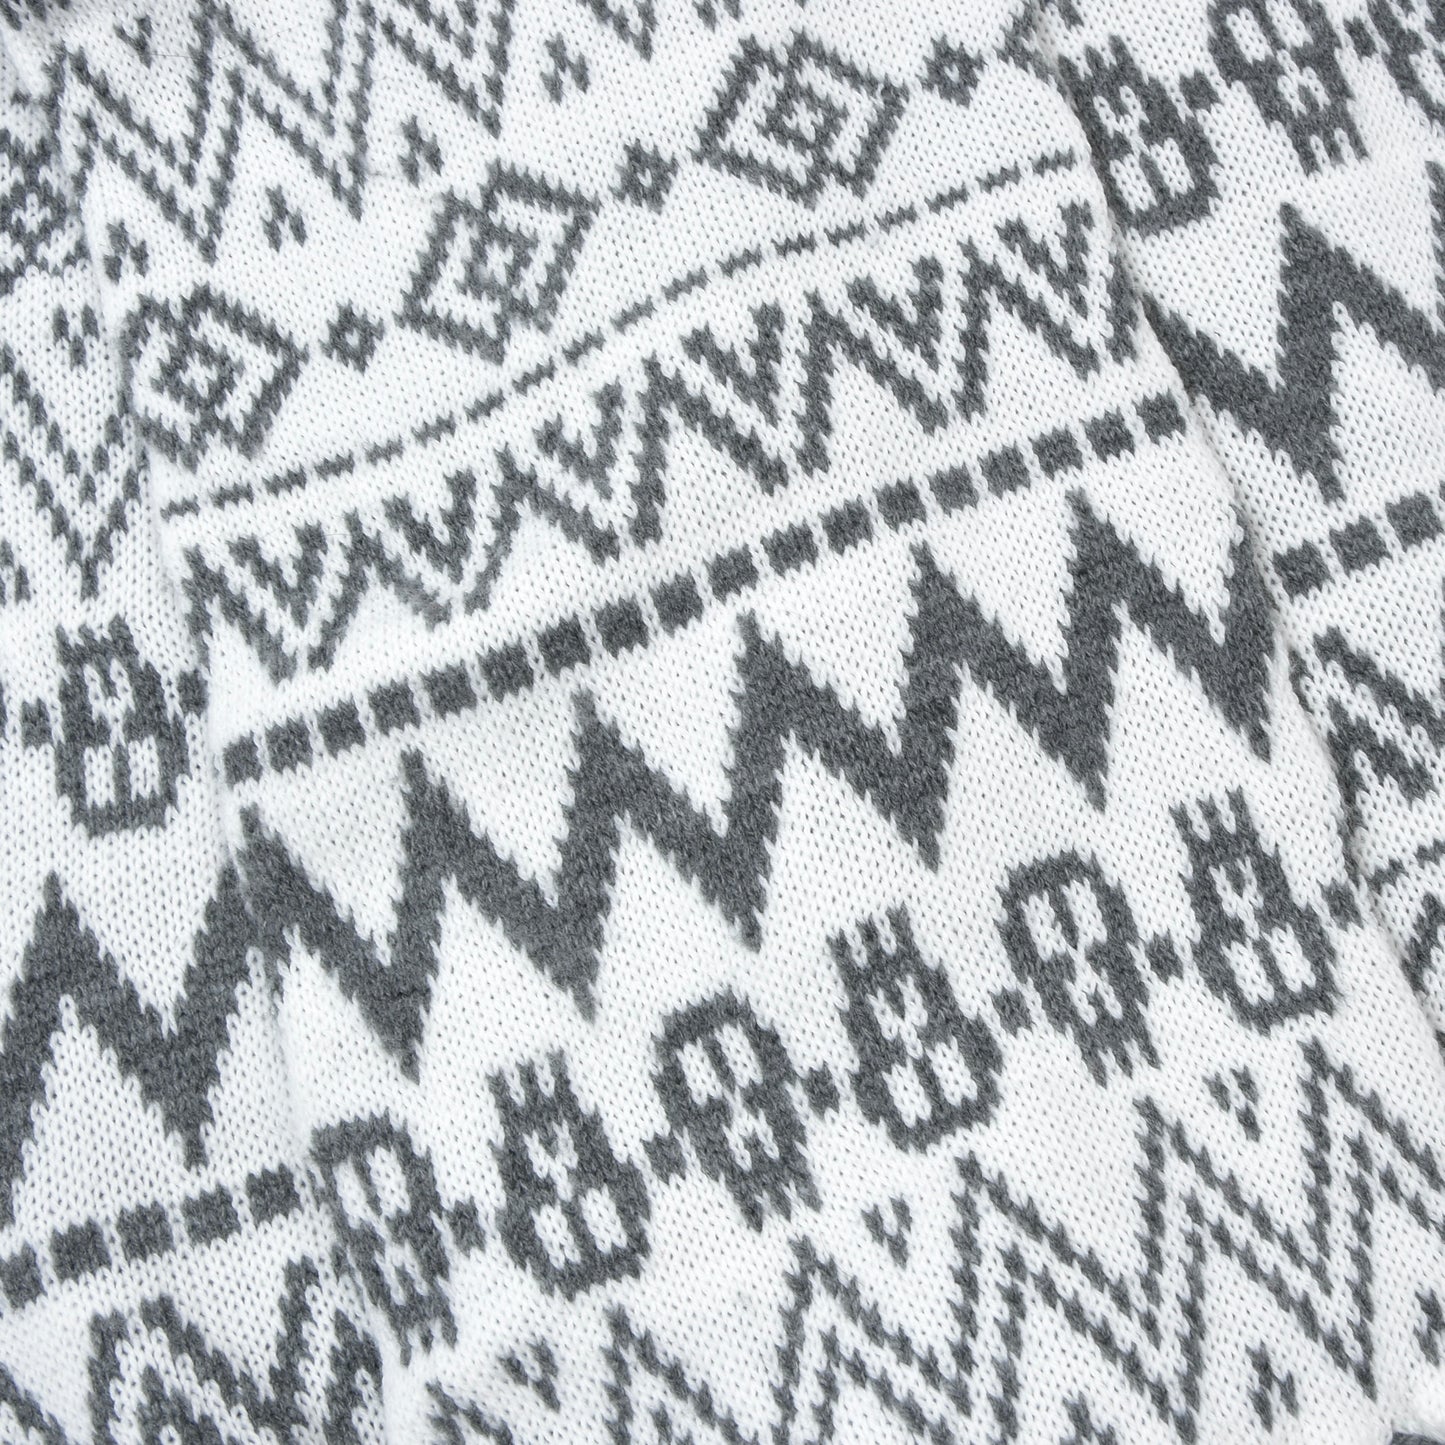 Codello Knit Scarf ca. 192cm - White/Grey